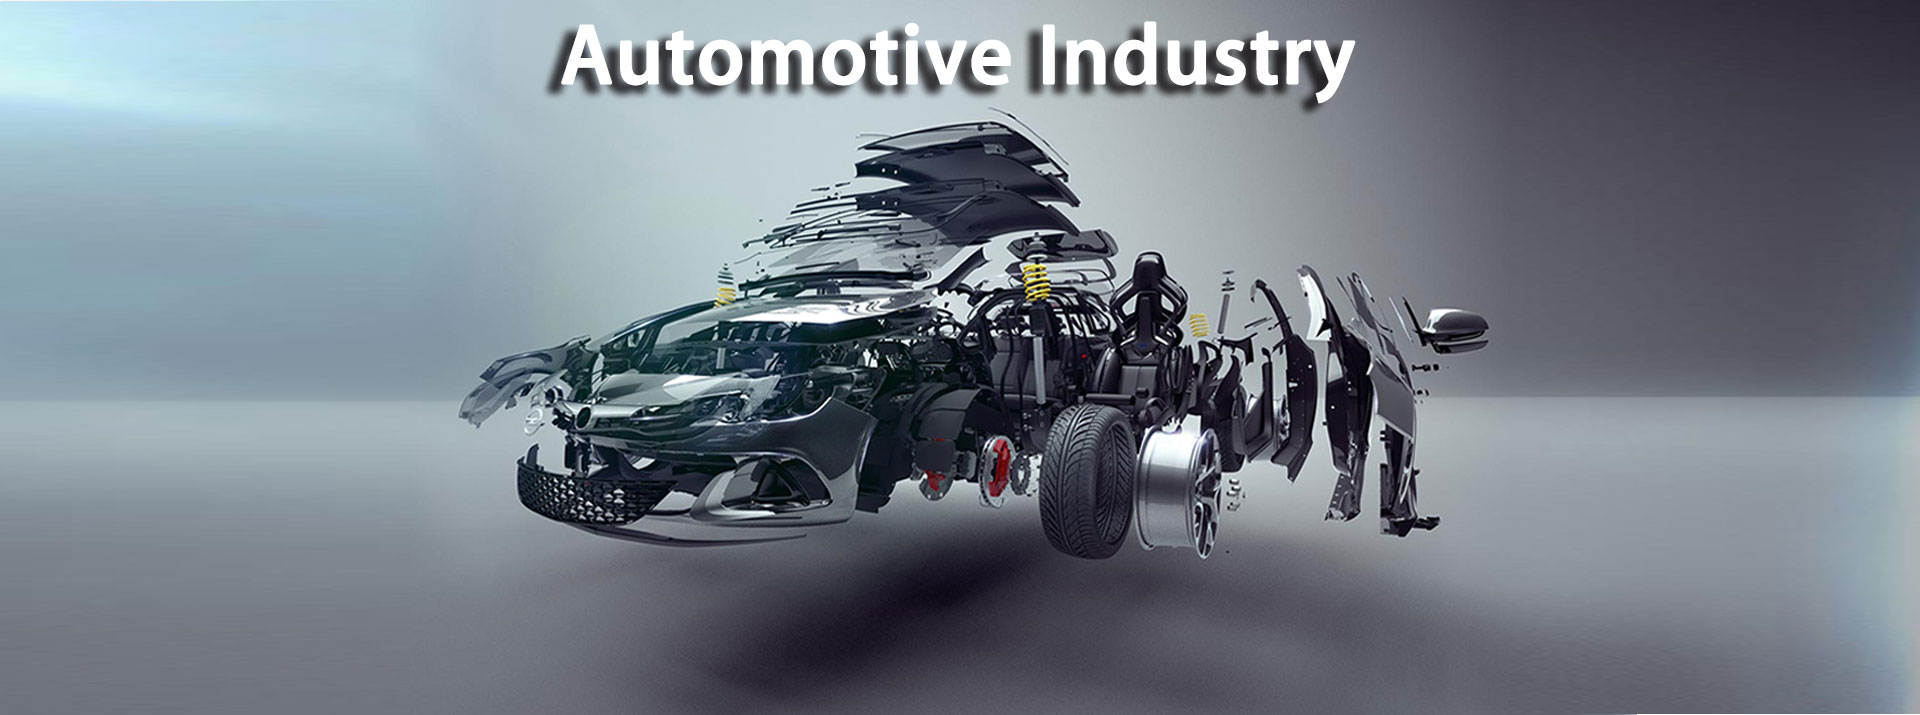 Industria automotive globală și reglementările sporite: un viitor incert